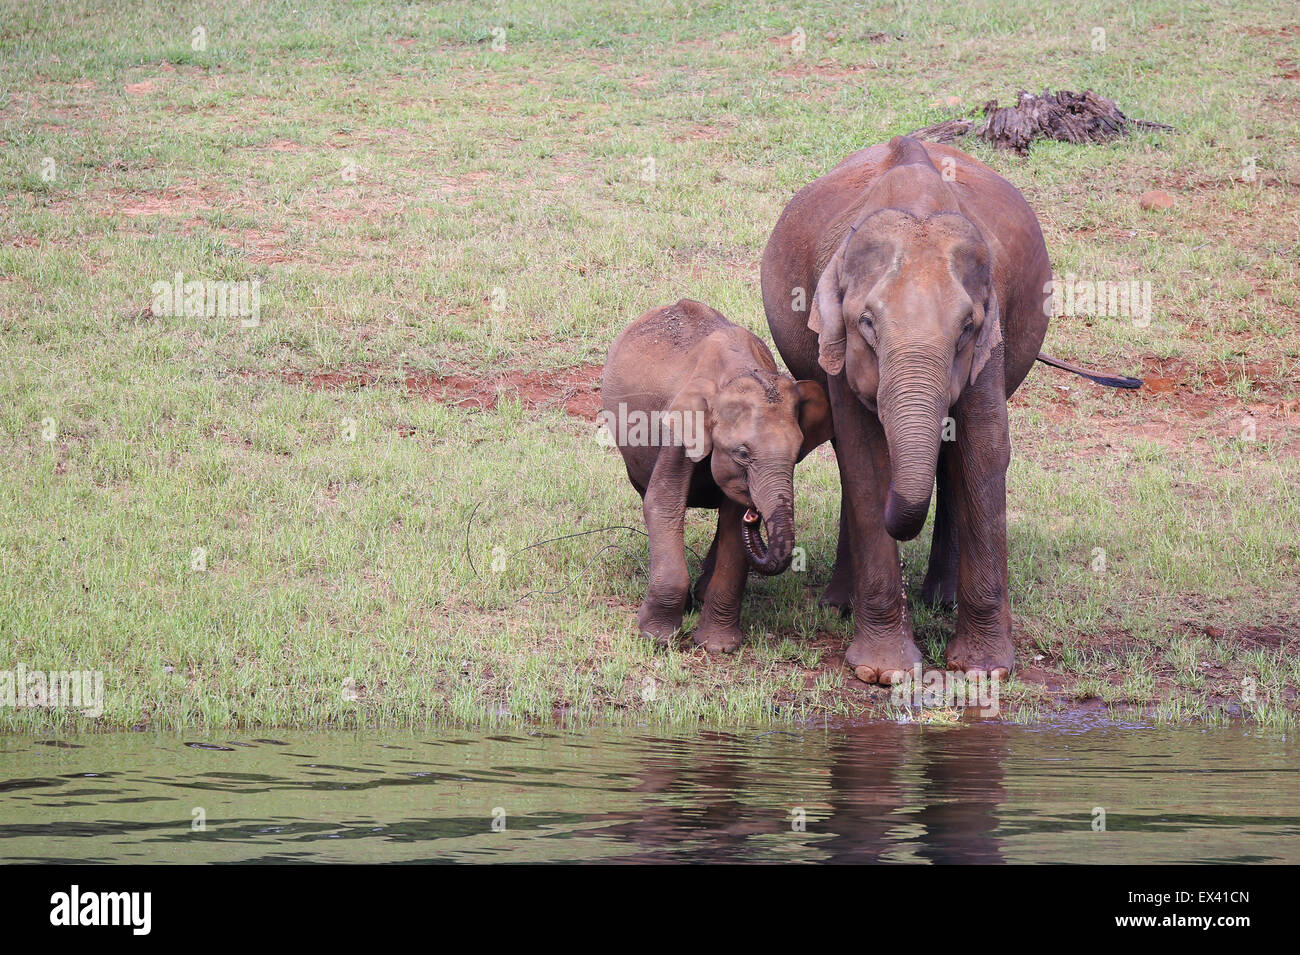 L'éléphant indien et du veau de l'eau potable à Thekkady Sanctuaire de la vie sauvage dans la région de Kerala, Inde Banque D'Images